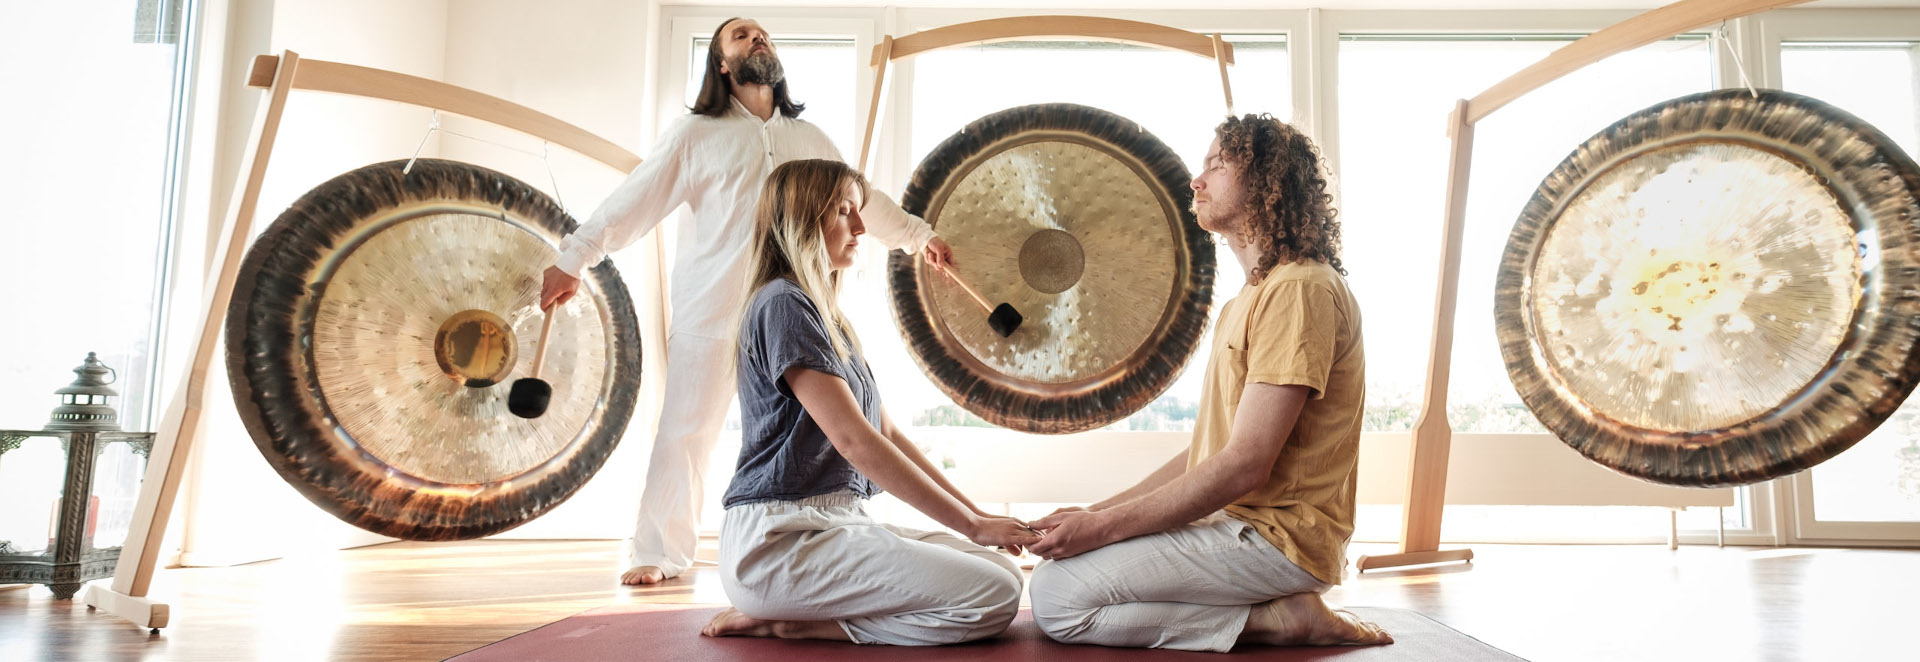 Gong makes meditation